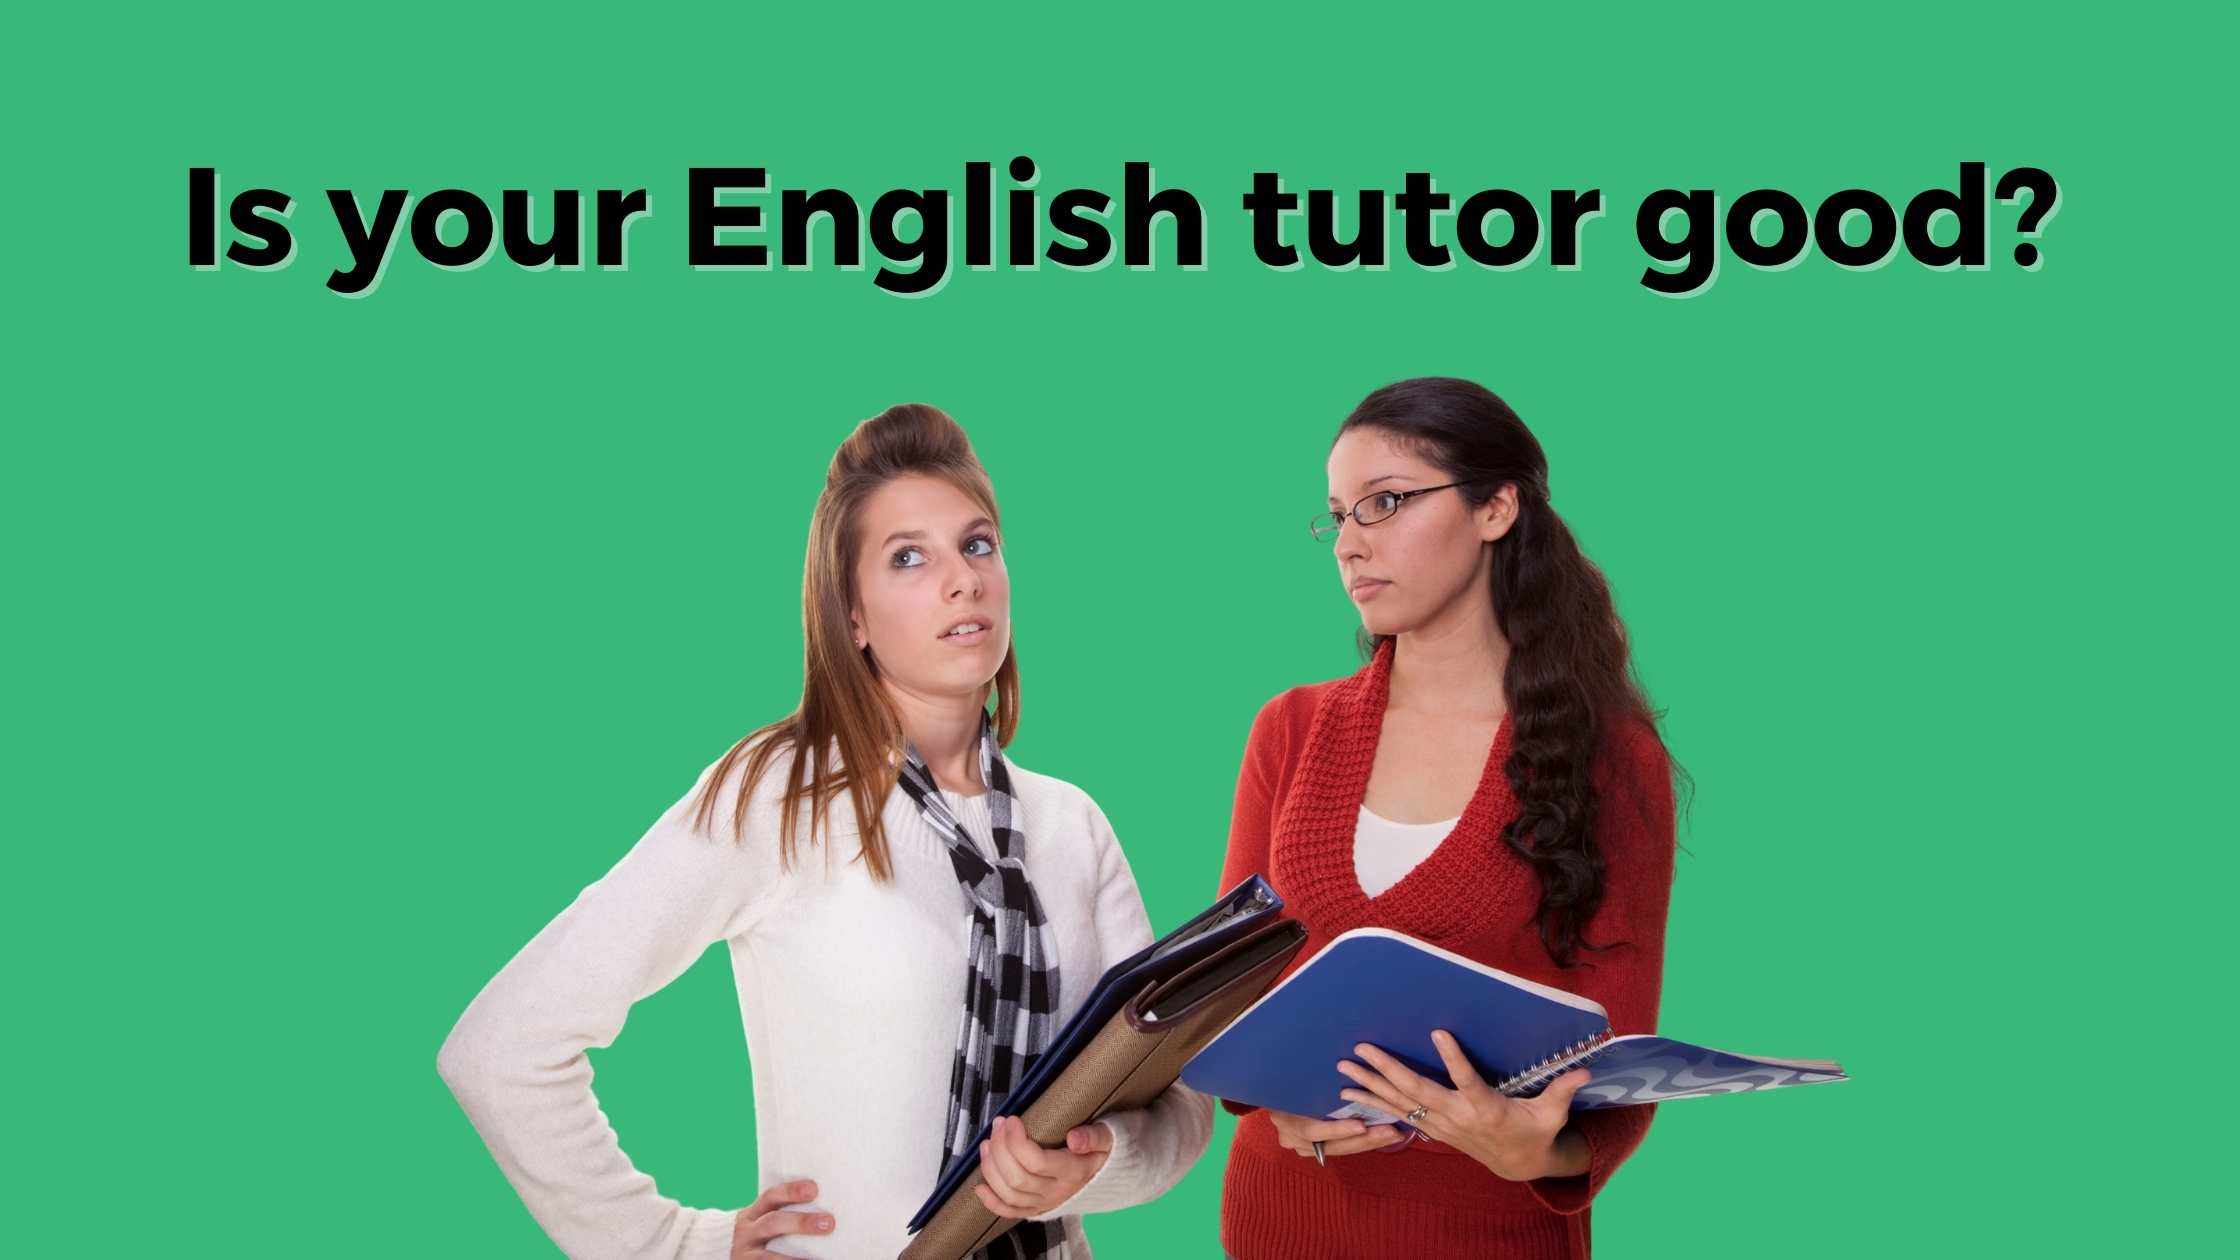 aprenda inglês, ensine inglês, tutor de inglês